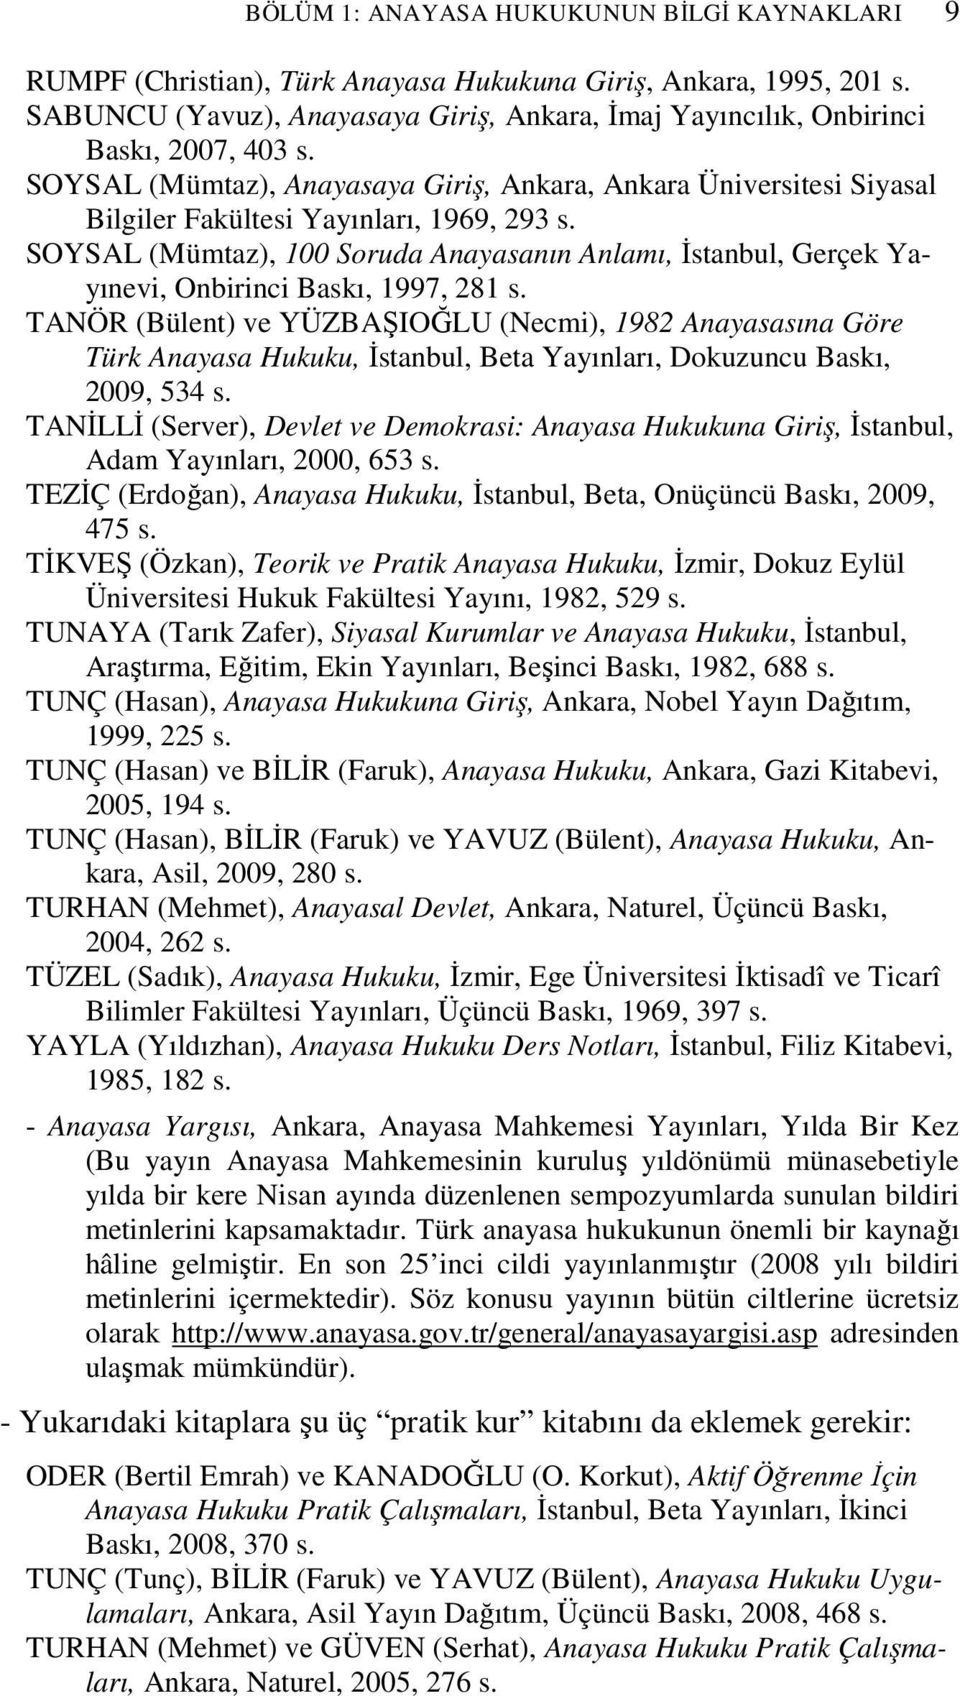 SOYSAL (Mümtaz), Anayasaya Giriş, Ankara, Ankara Üniversitesi Siyasal Bilgiler Fakültesi Yayınları, 1969, 293 s.